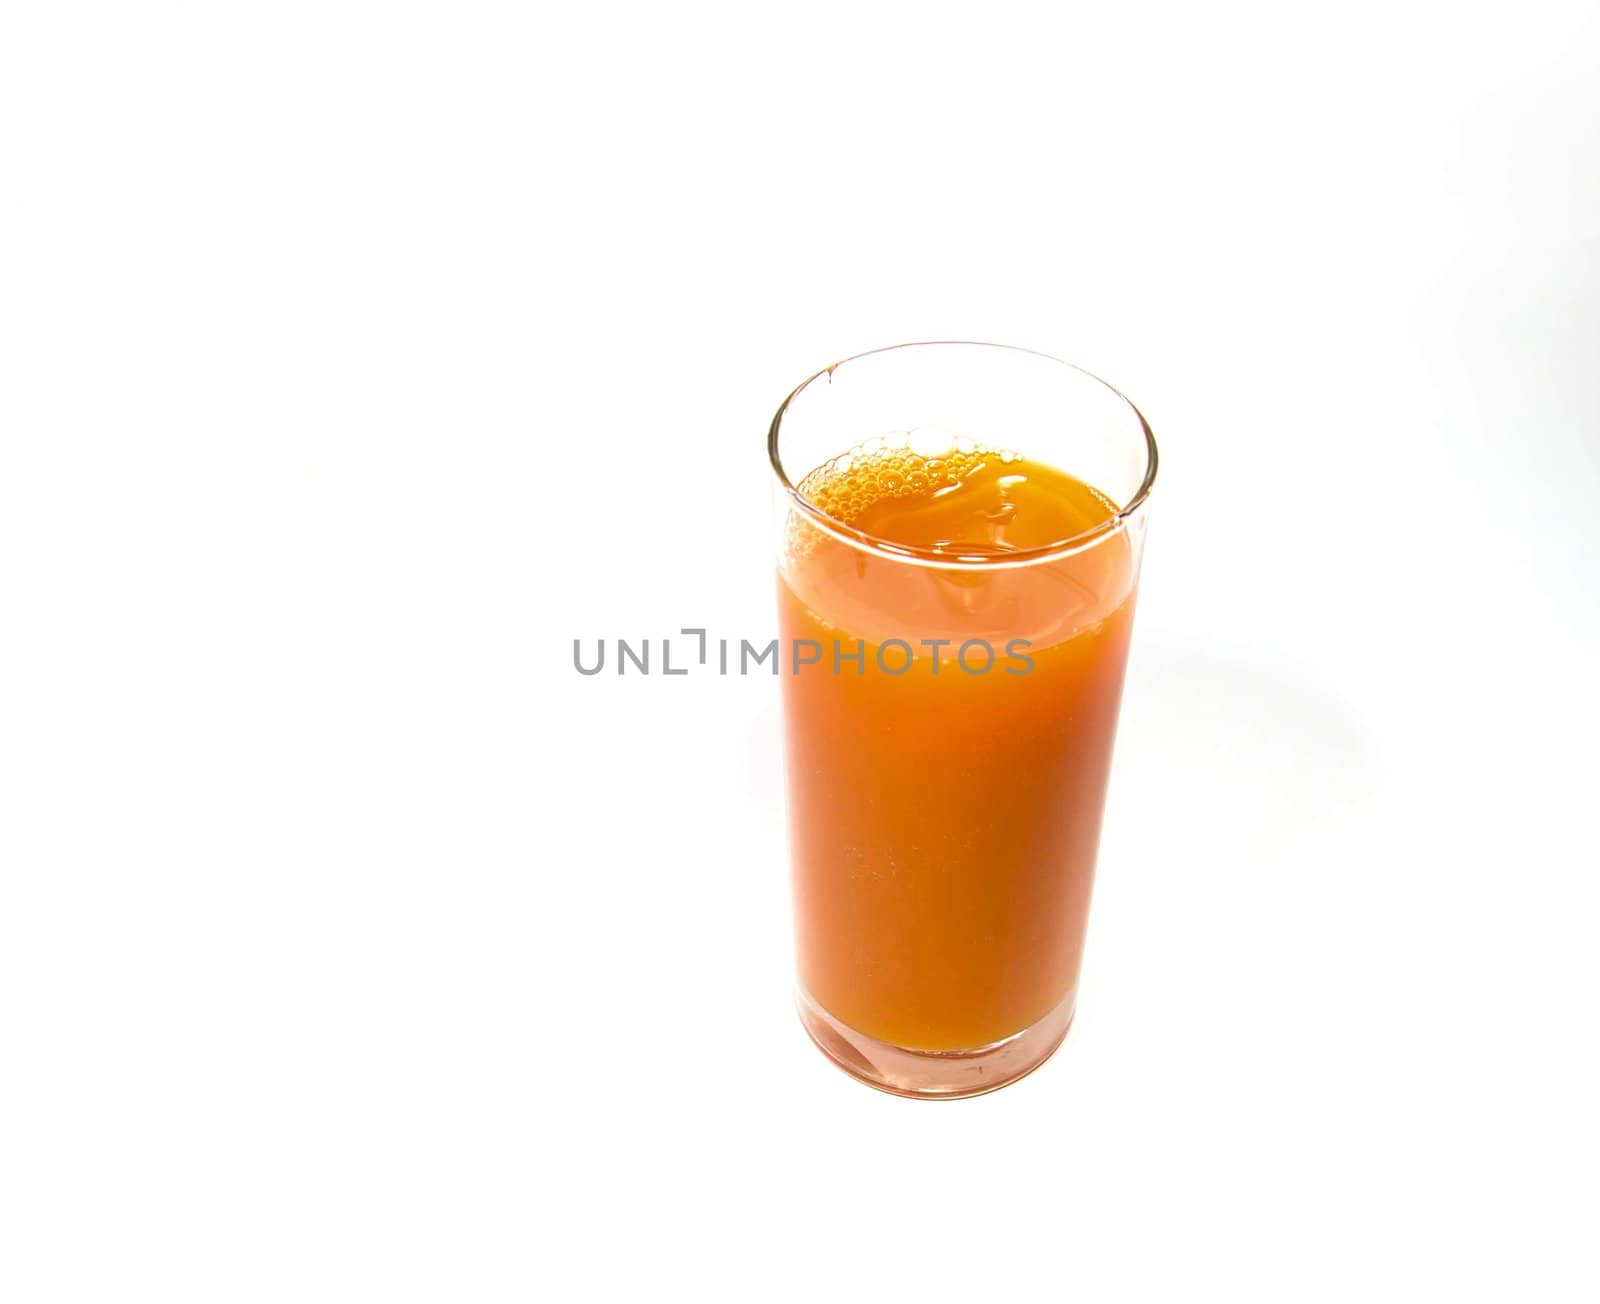 Fruit juice  isolated on a white background